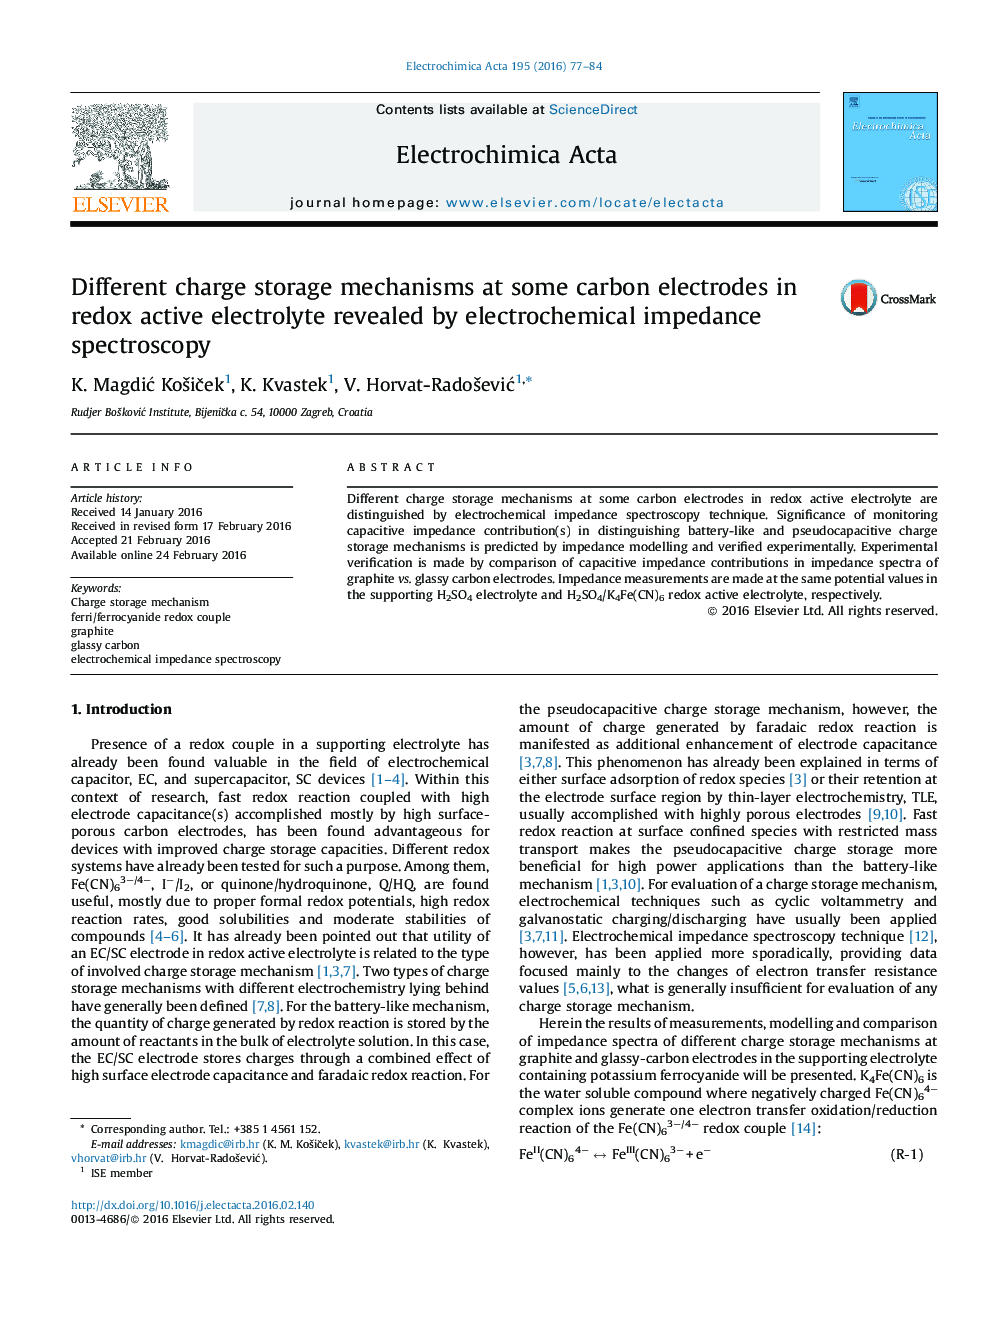 مکانیسم های مختلف ذخیره سازی شارژ در برخی از الکترودهای کربن در الکترولیت فعال بازآرایی توسط طیف سنجی امپدانس الکتروشیمیایی 